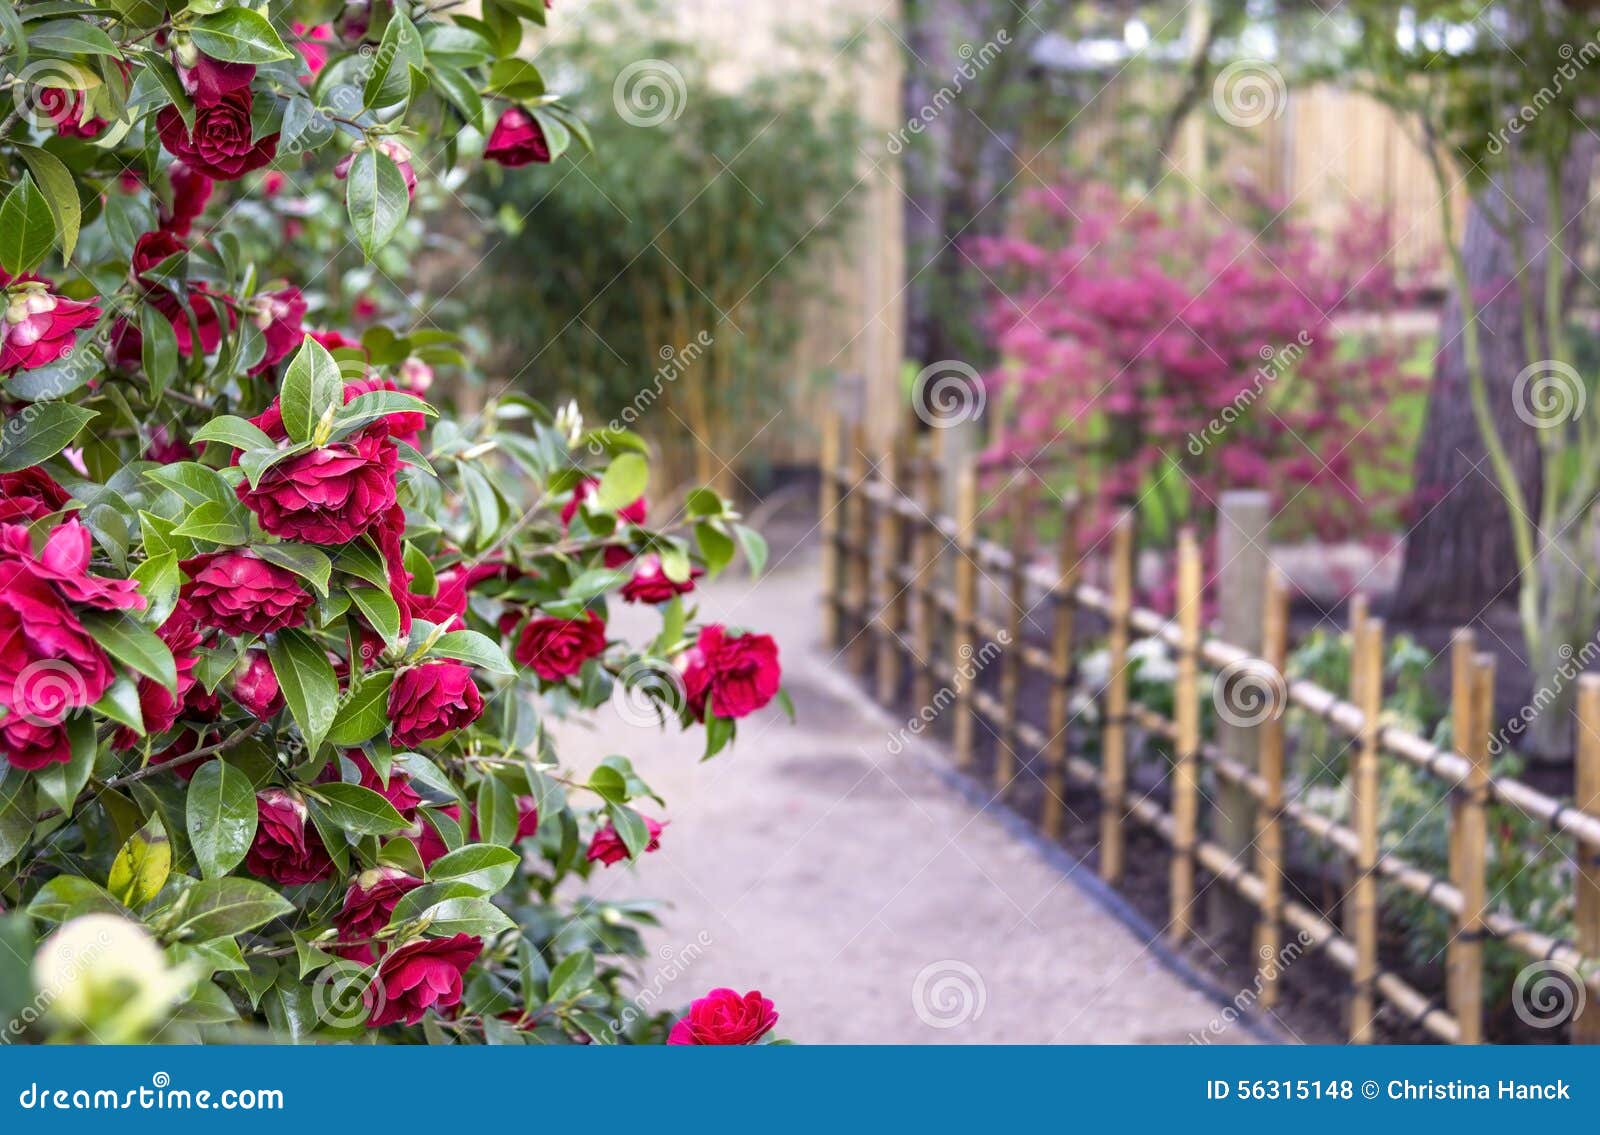 Camélias dans le jardin photo stock. Image du horizontal - 56315148